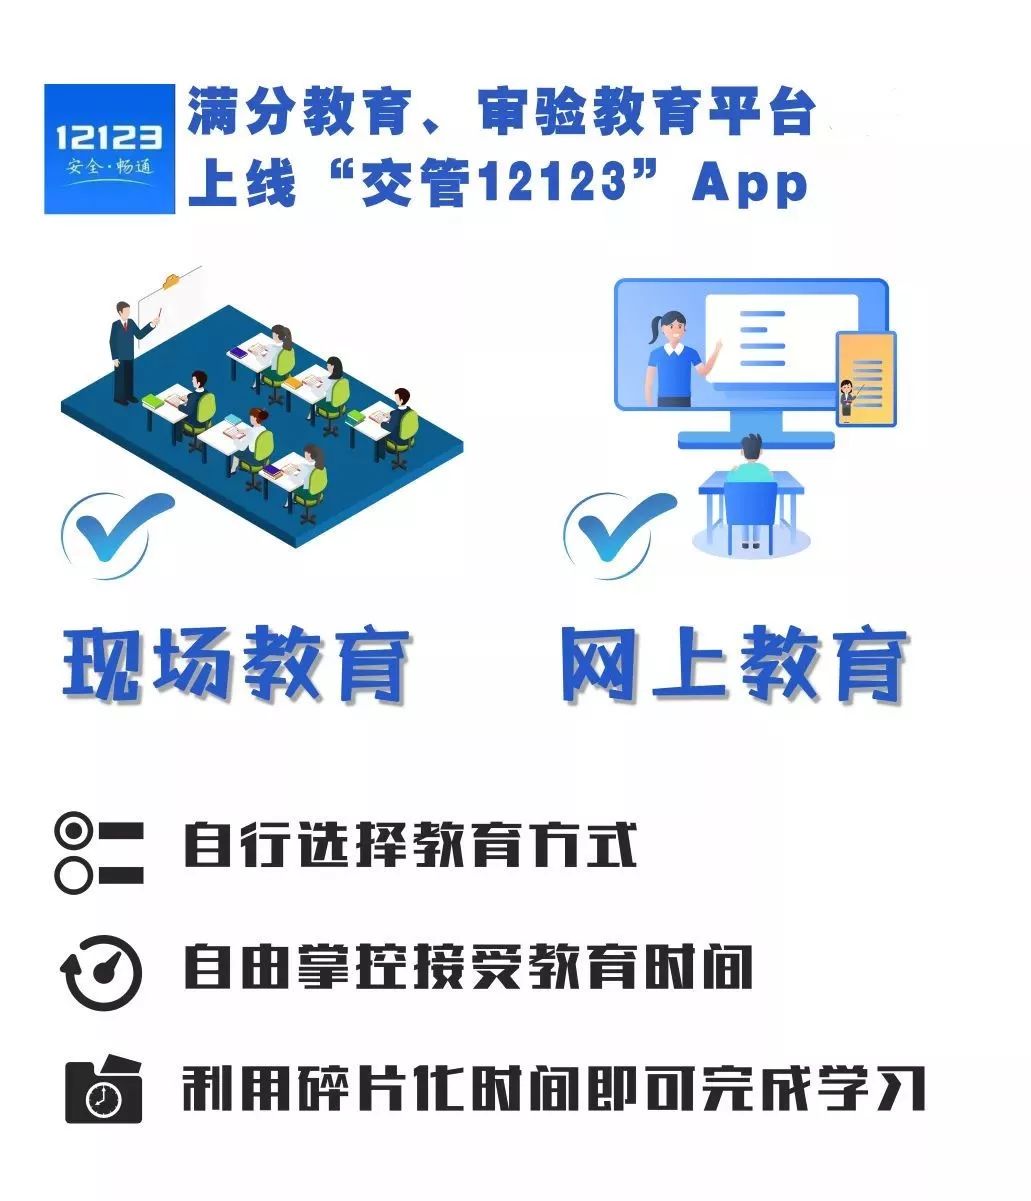 广安招聘信息网_广安人才网助个人创业,创业补贴1.2万元(2)